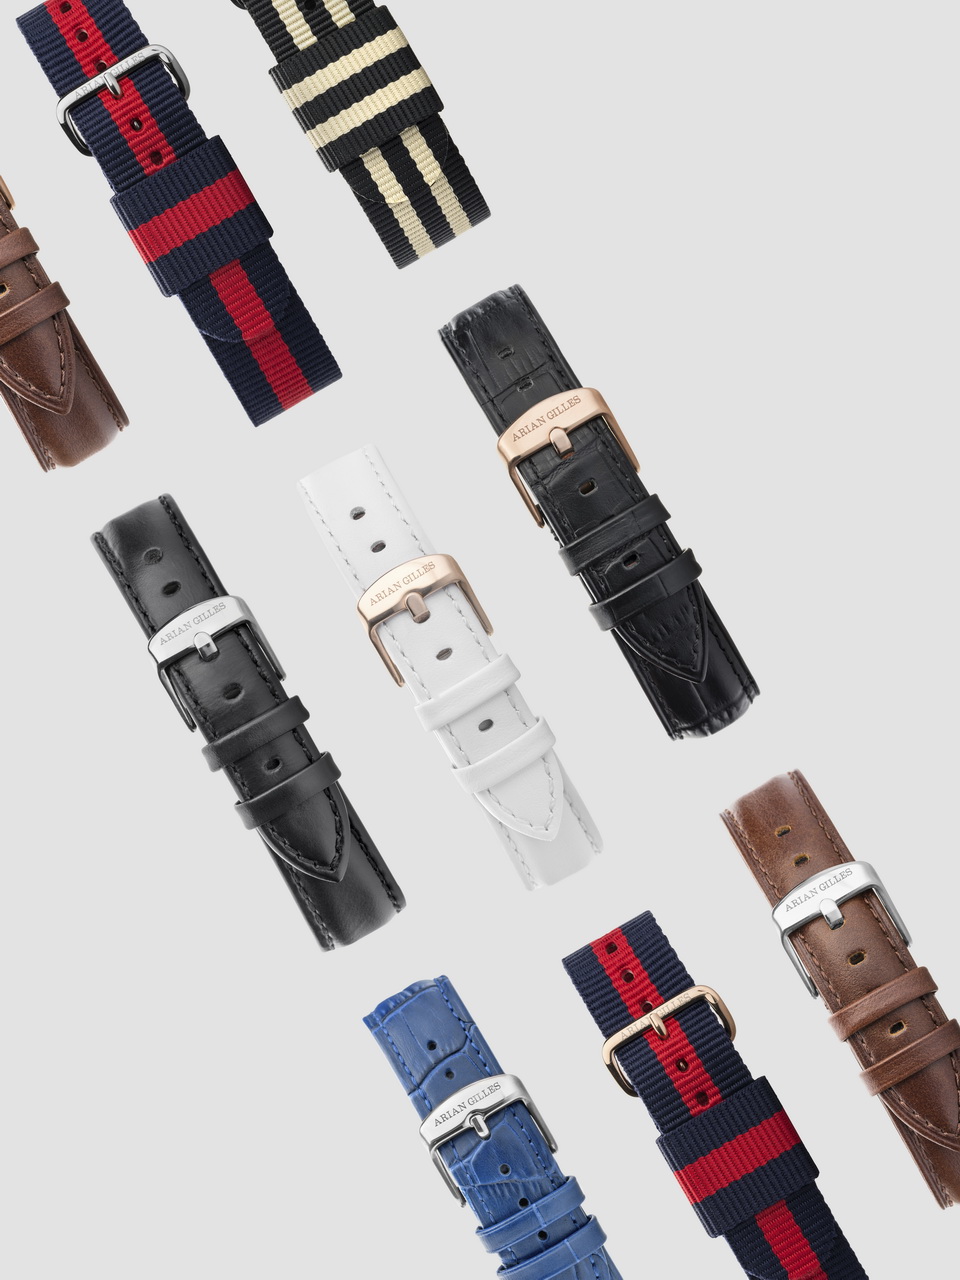 Armbänder für Uhren als Packshot, Freisteller, Produktfoto